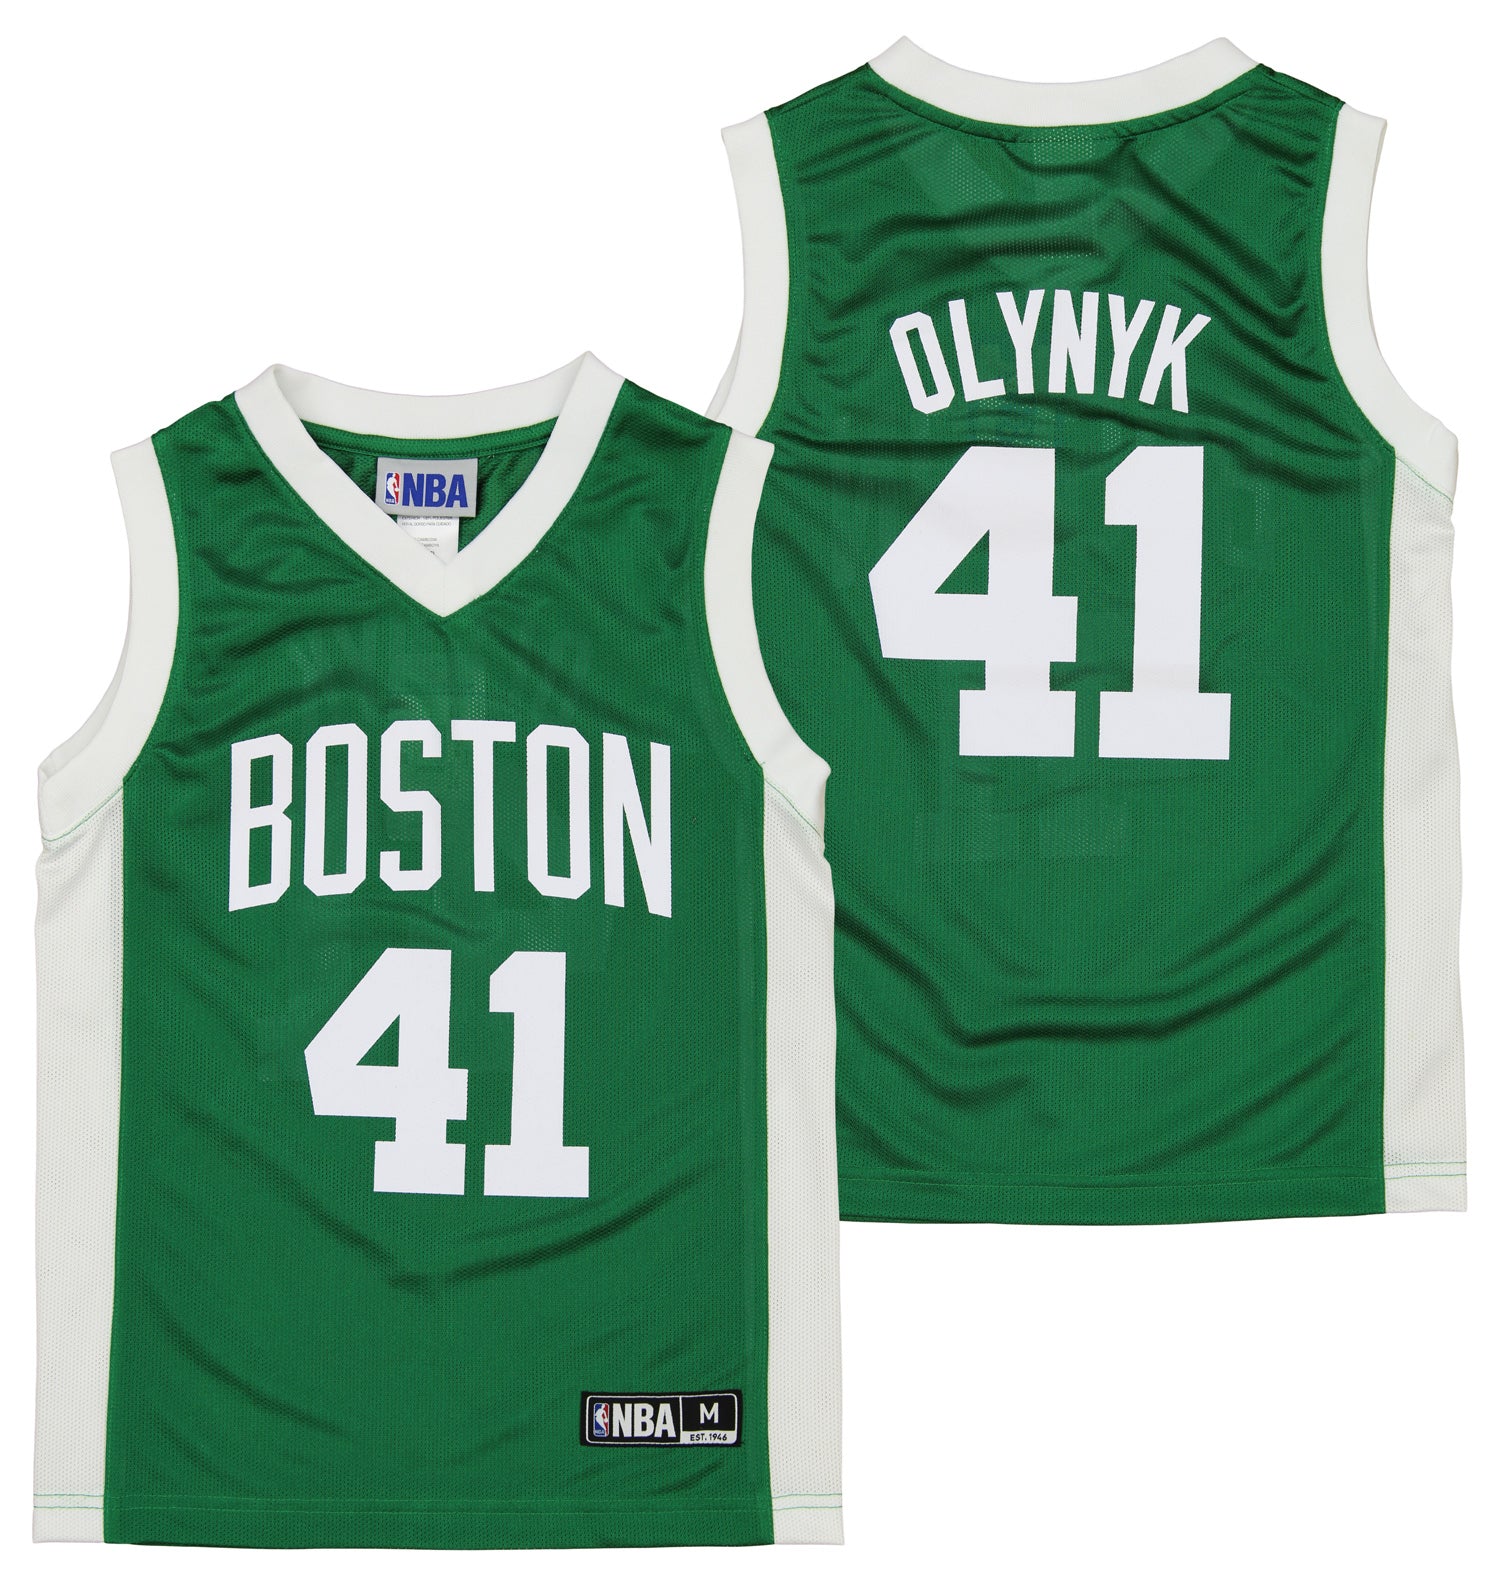 Shirts & Tops, Boston Celtics Jersey Youth Size Xl